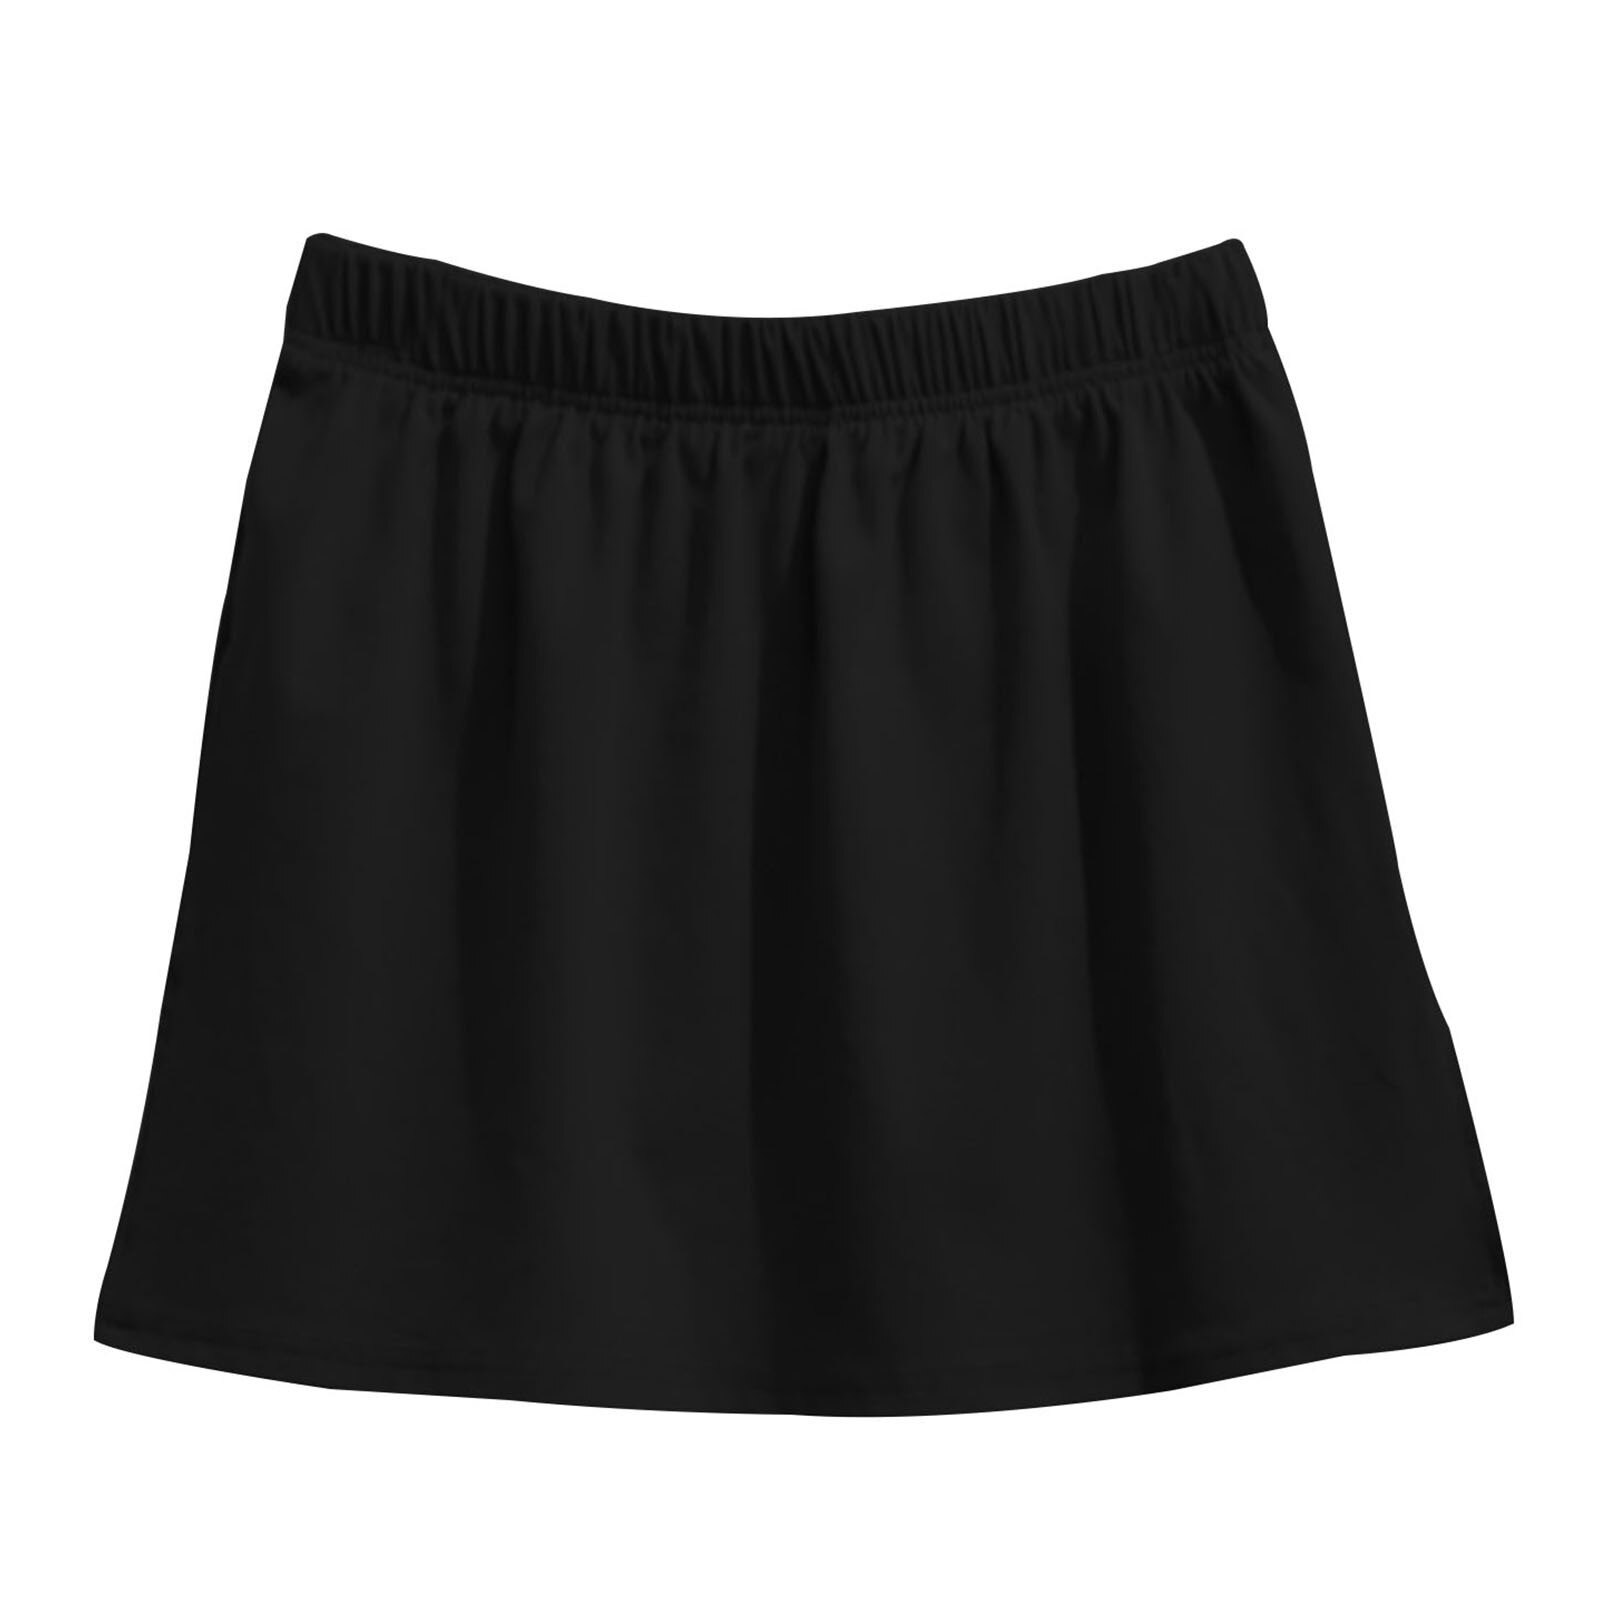 Sommer høj talje sweatshirt base nederdel med kvindelig tennis kort nederdel fire sæsoner all-match mini blød nederdel i forneden #30: Sort